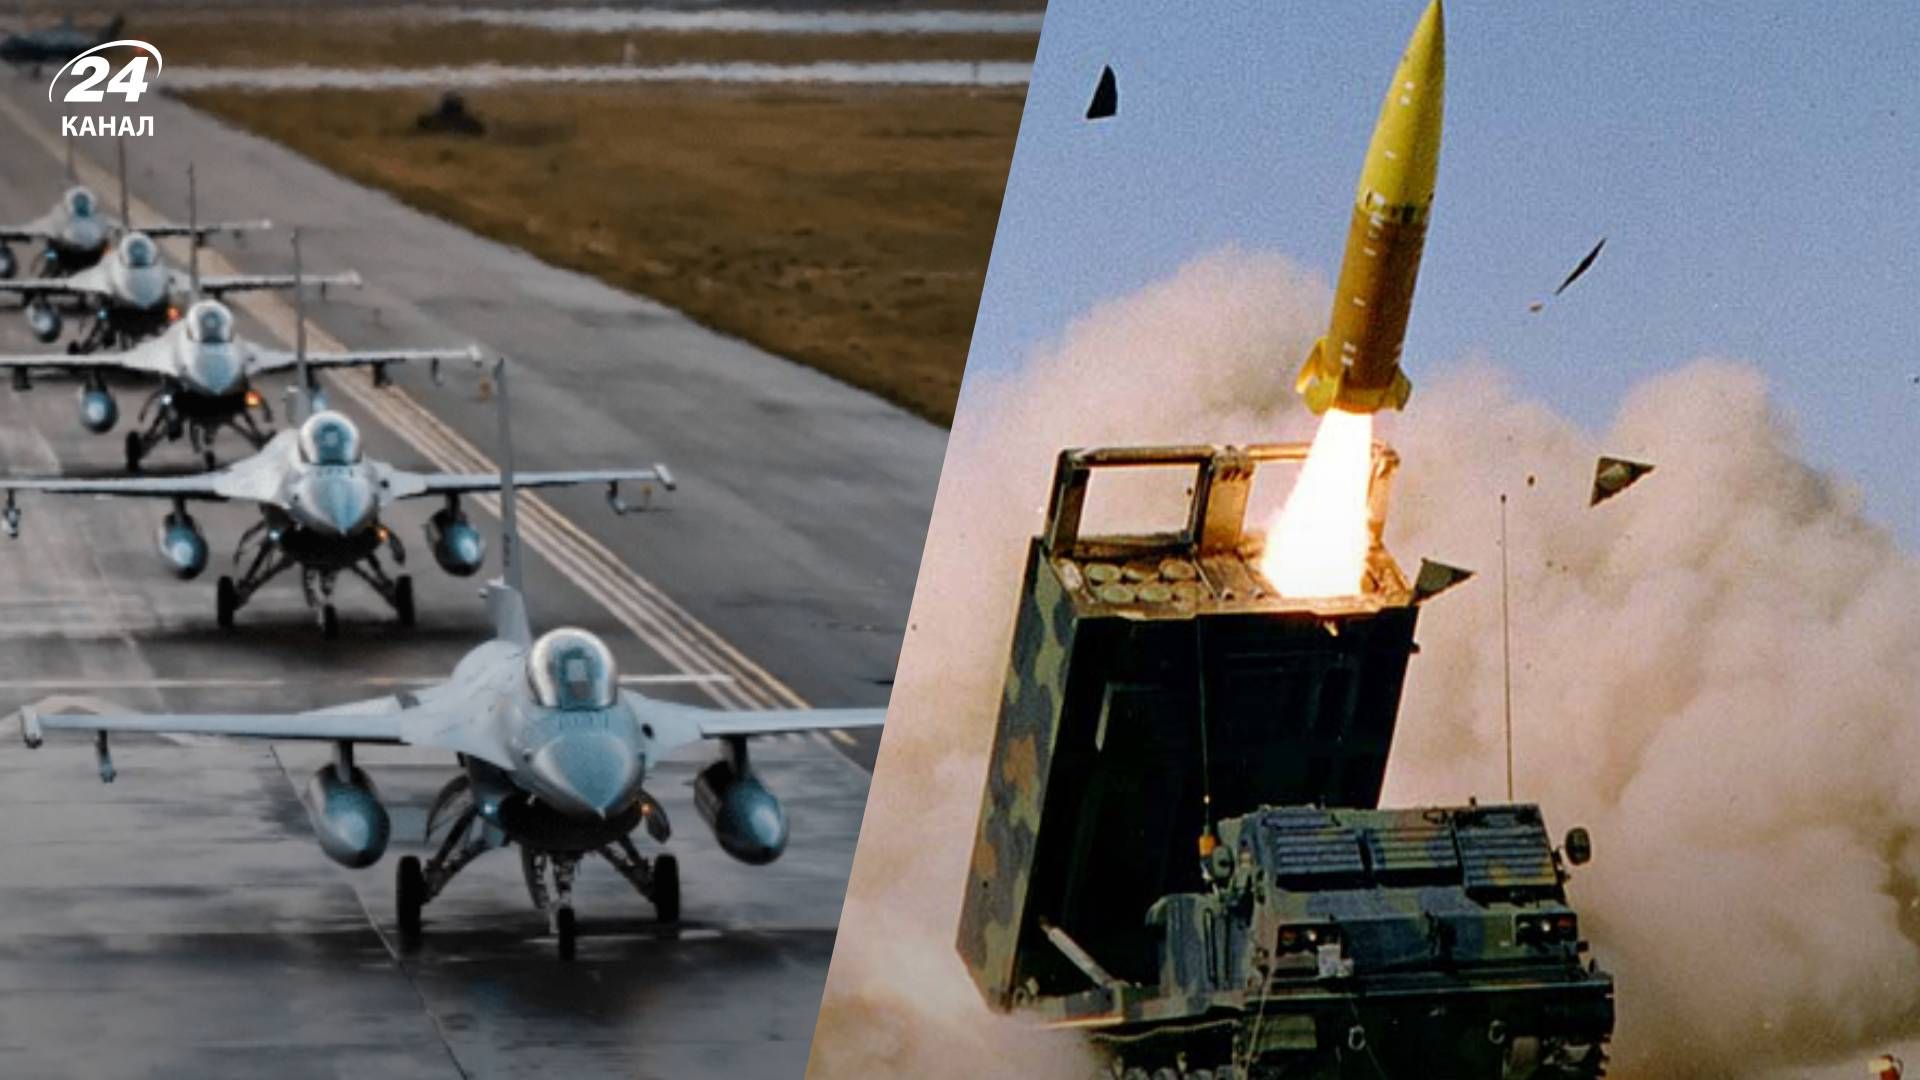 Надання далекобійних ракет - яке озброєння потрібне більше за авіацію 